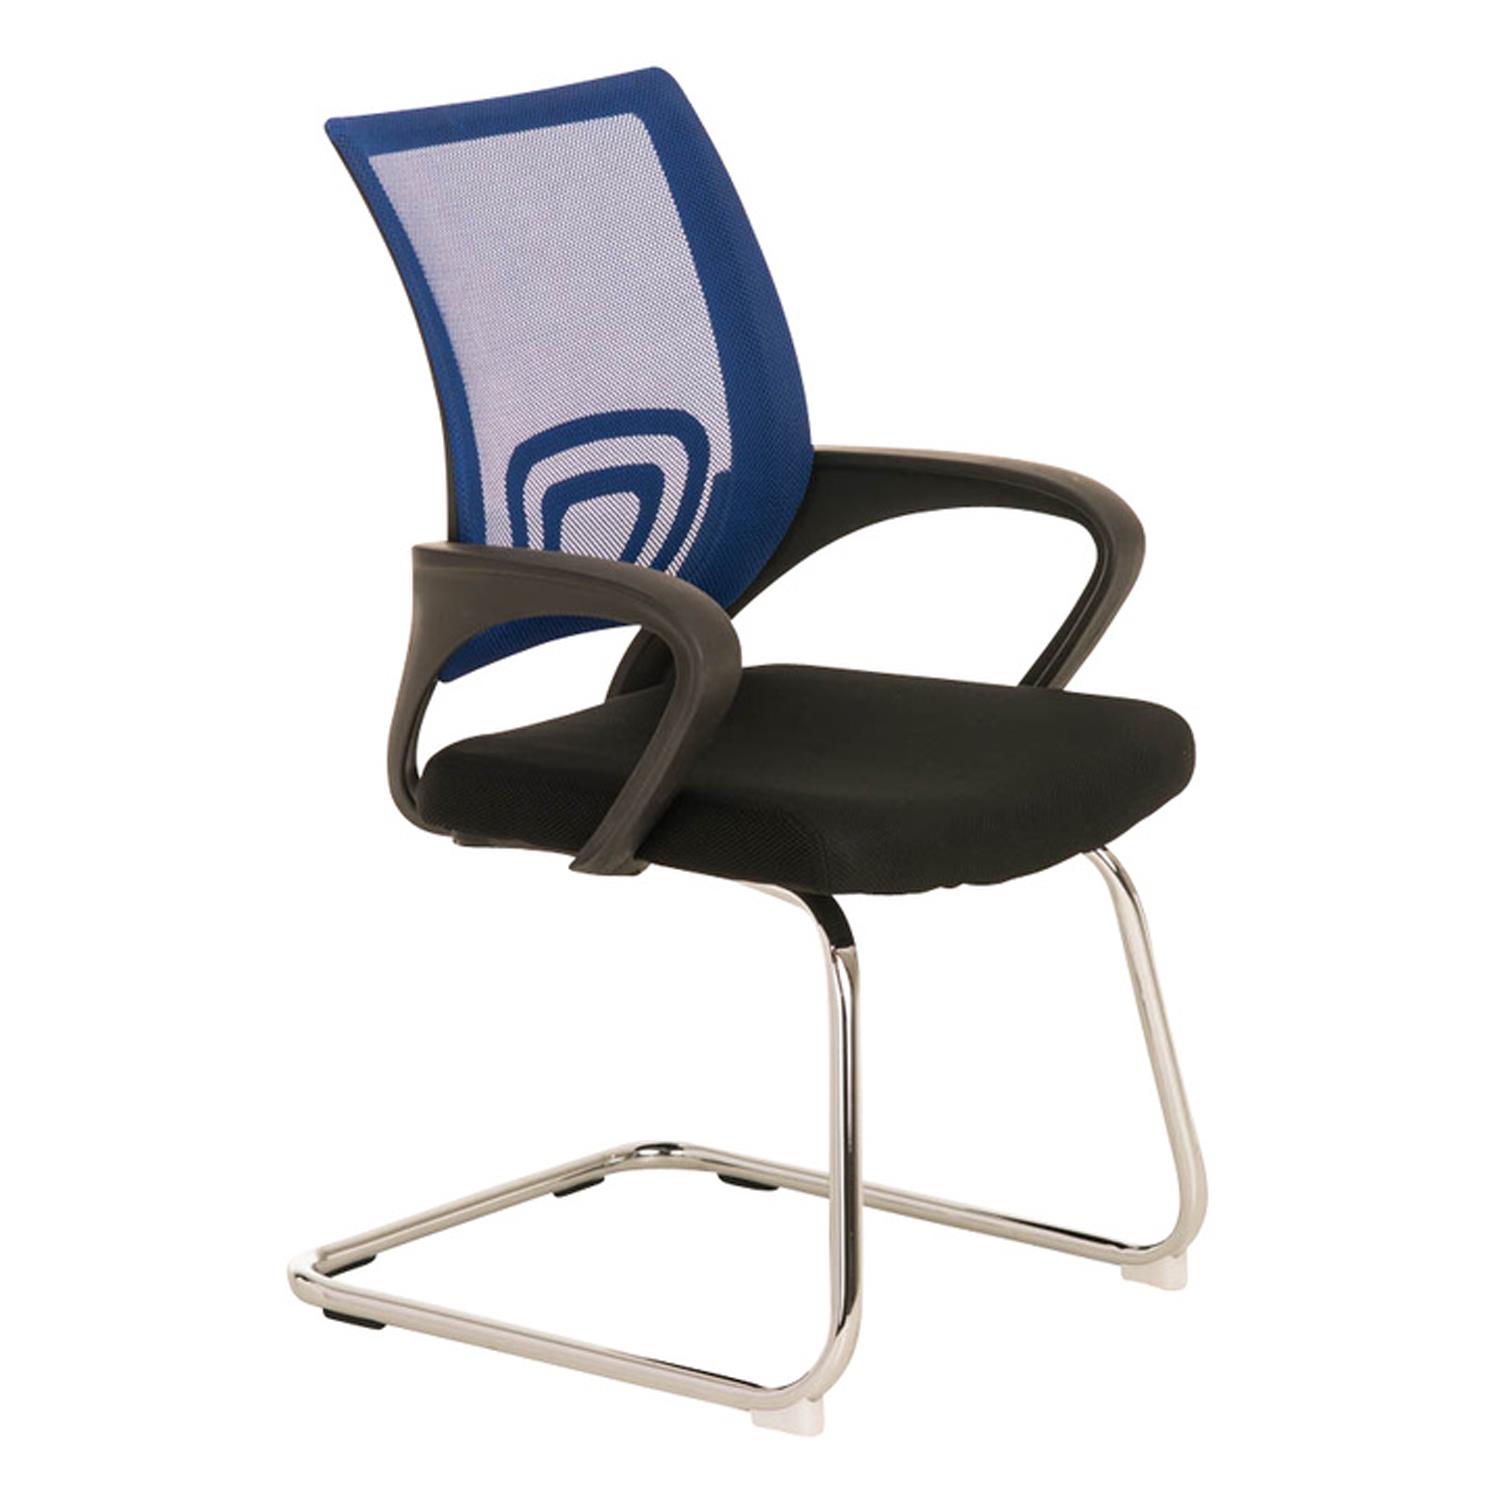 Cadeira de Visita SEUL V, Design Atractivo, Assento Acolchoado, Cor Azul